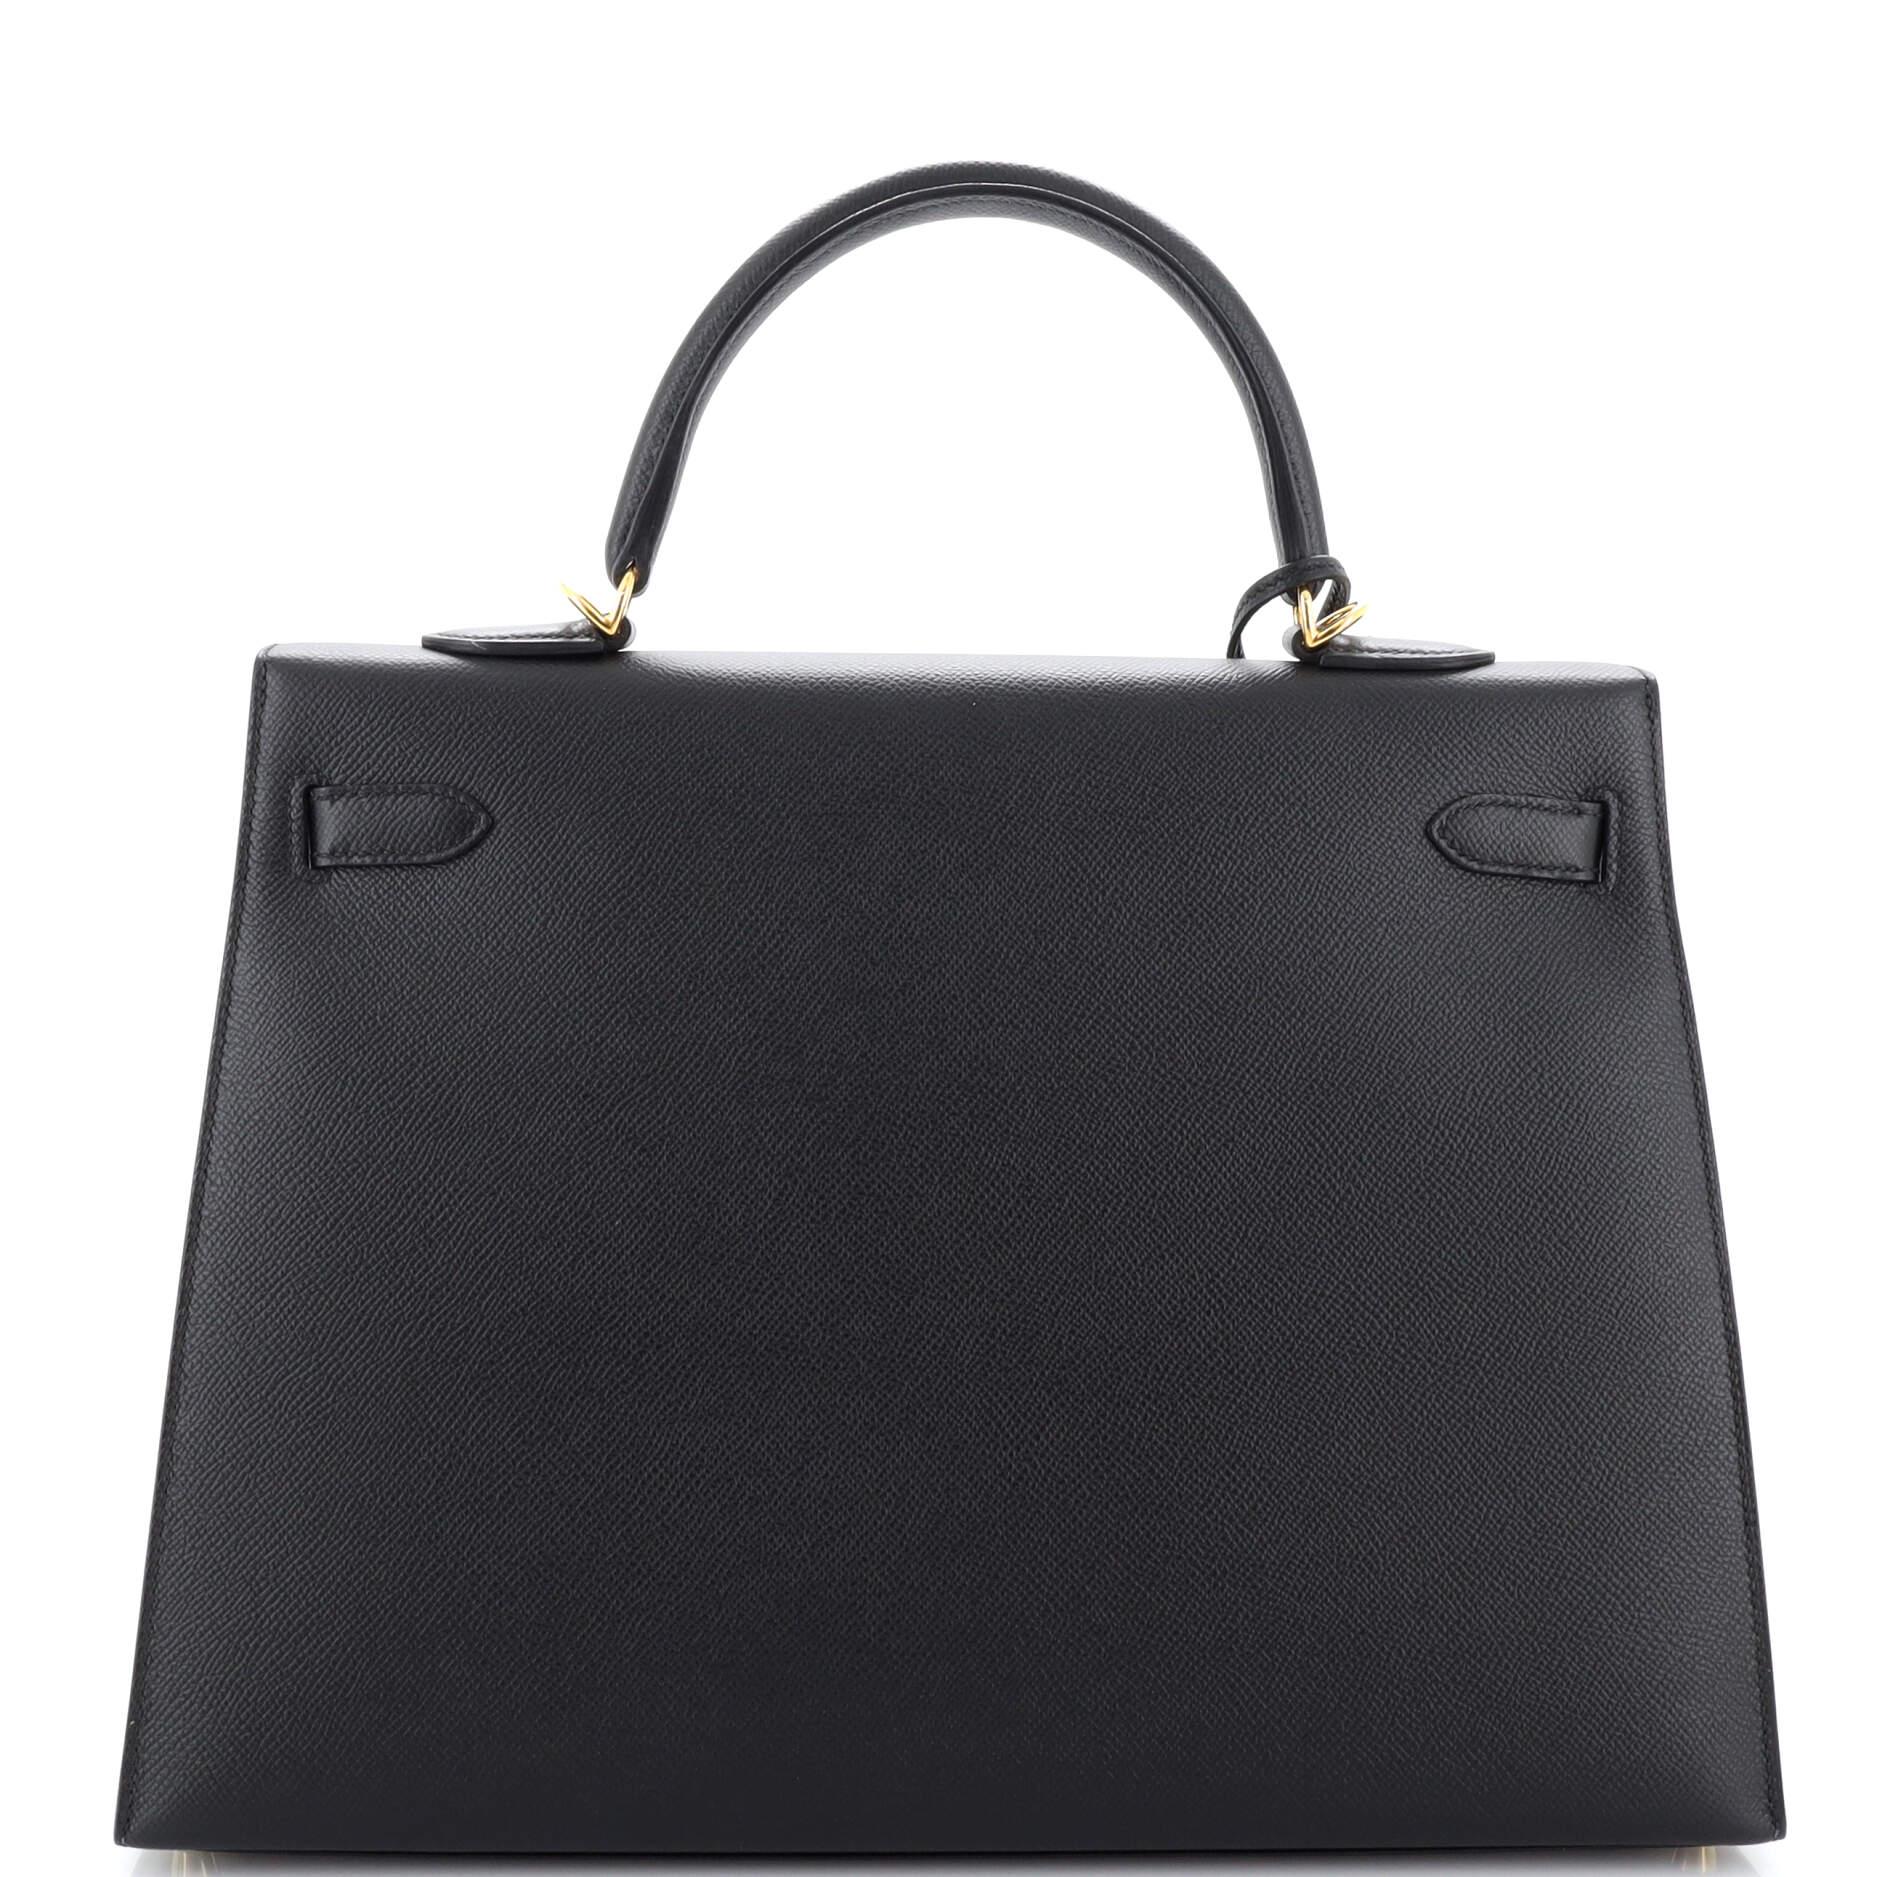 Women's Hermes Kelly Handbag Noir Epsom with Gold Hardware 35